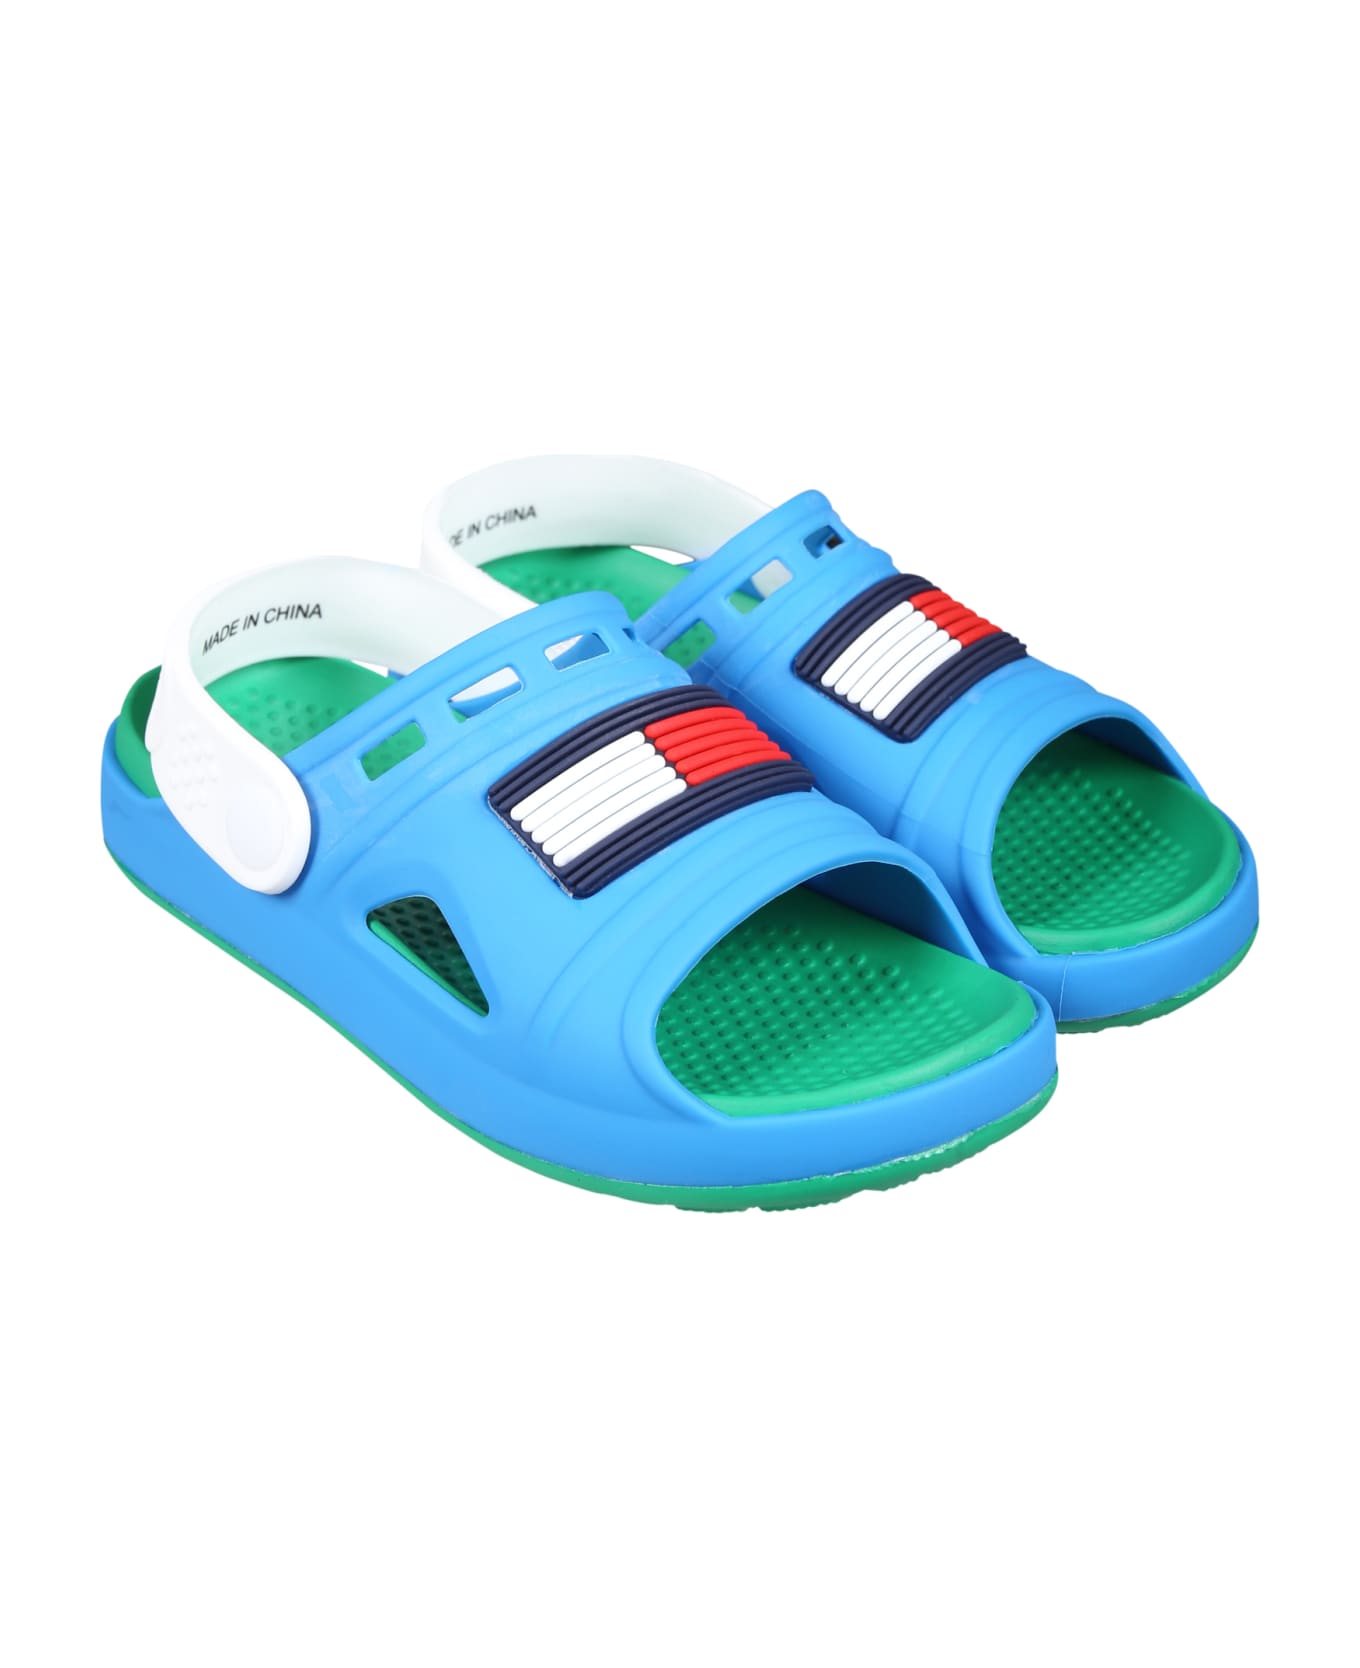 Tommy Hilfiger Light Blue Sandals For Boy With Flag - Light Blue シューズ